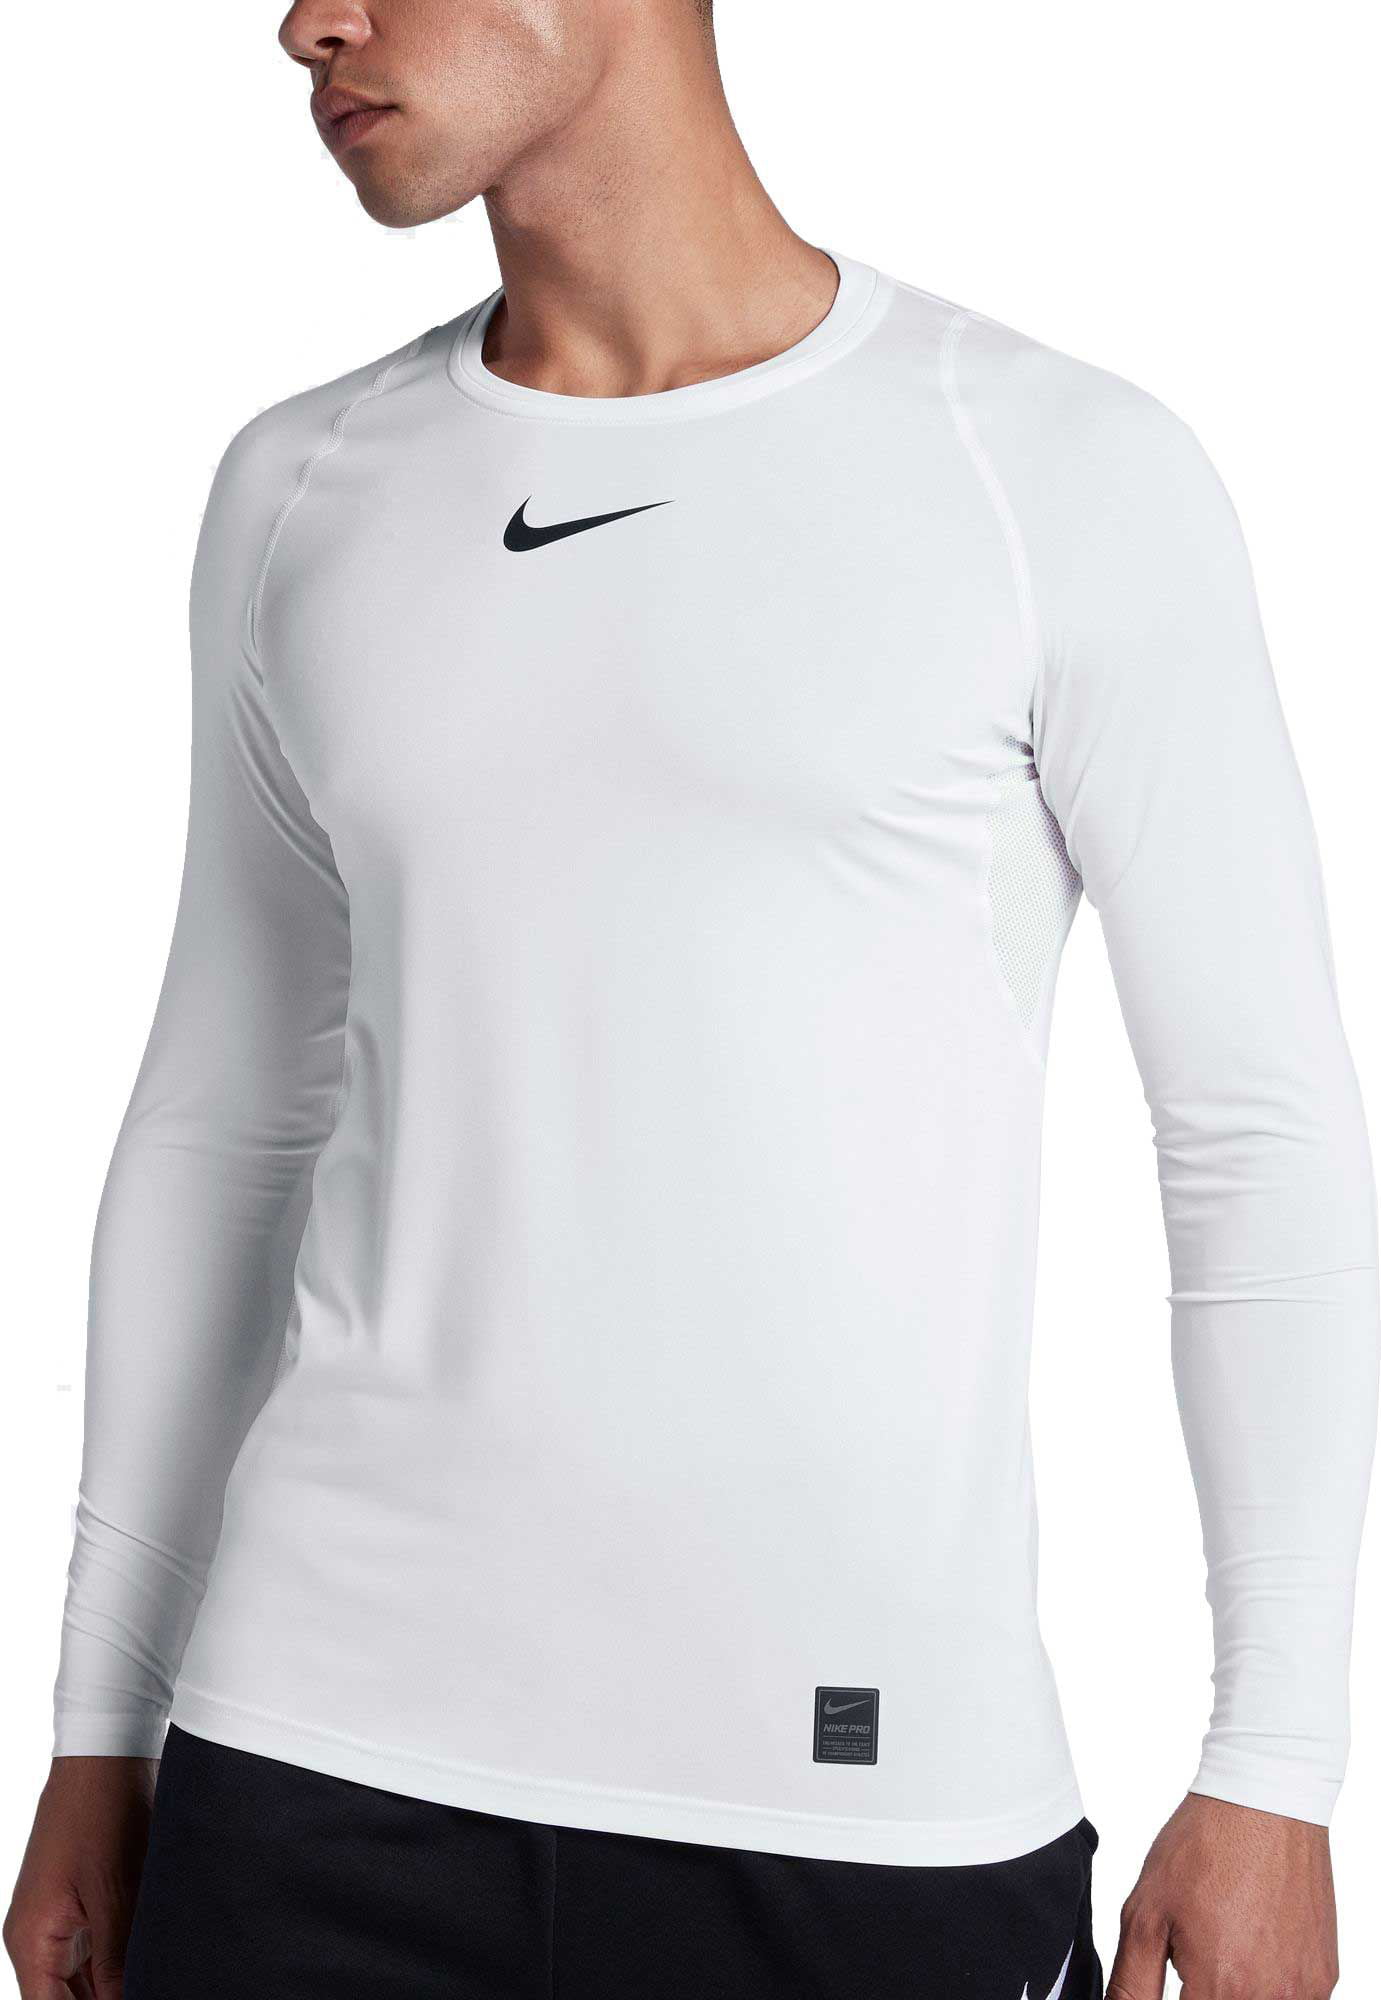 Se igennem Svare Begivenhed Nike Men's Pro Long Sleeve Fitted Shirt - Walmart.com